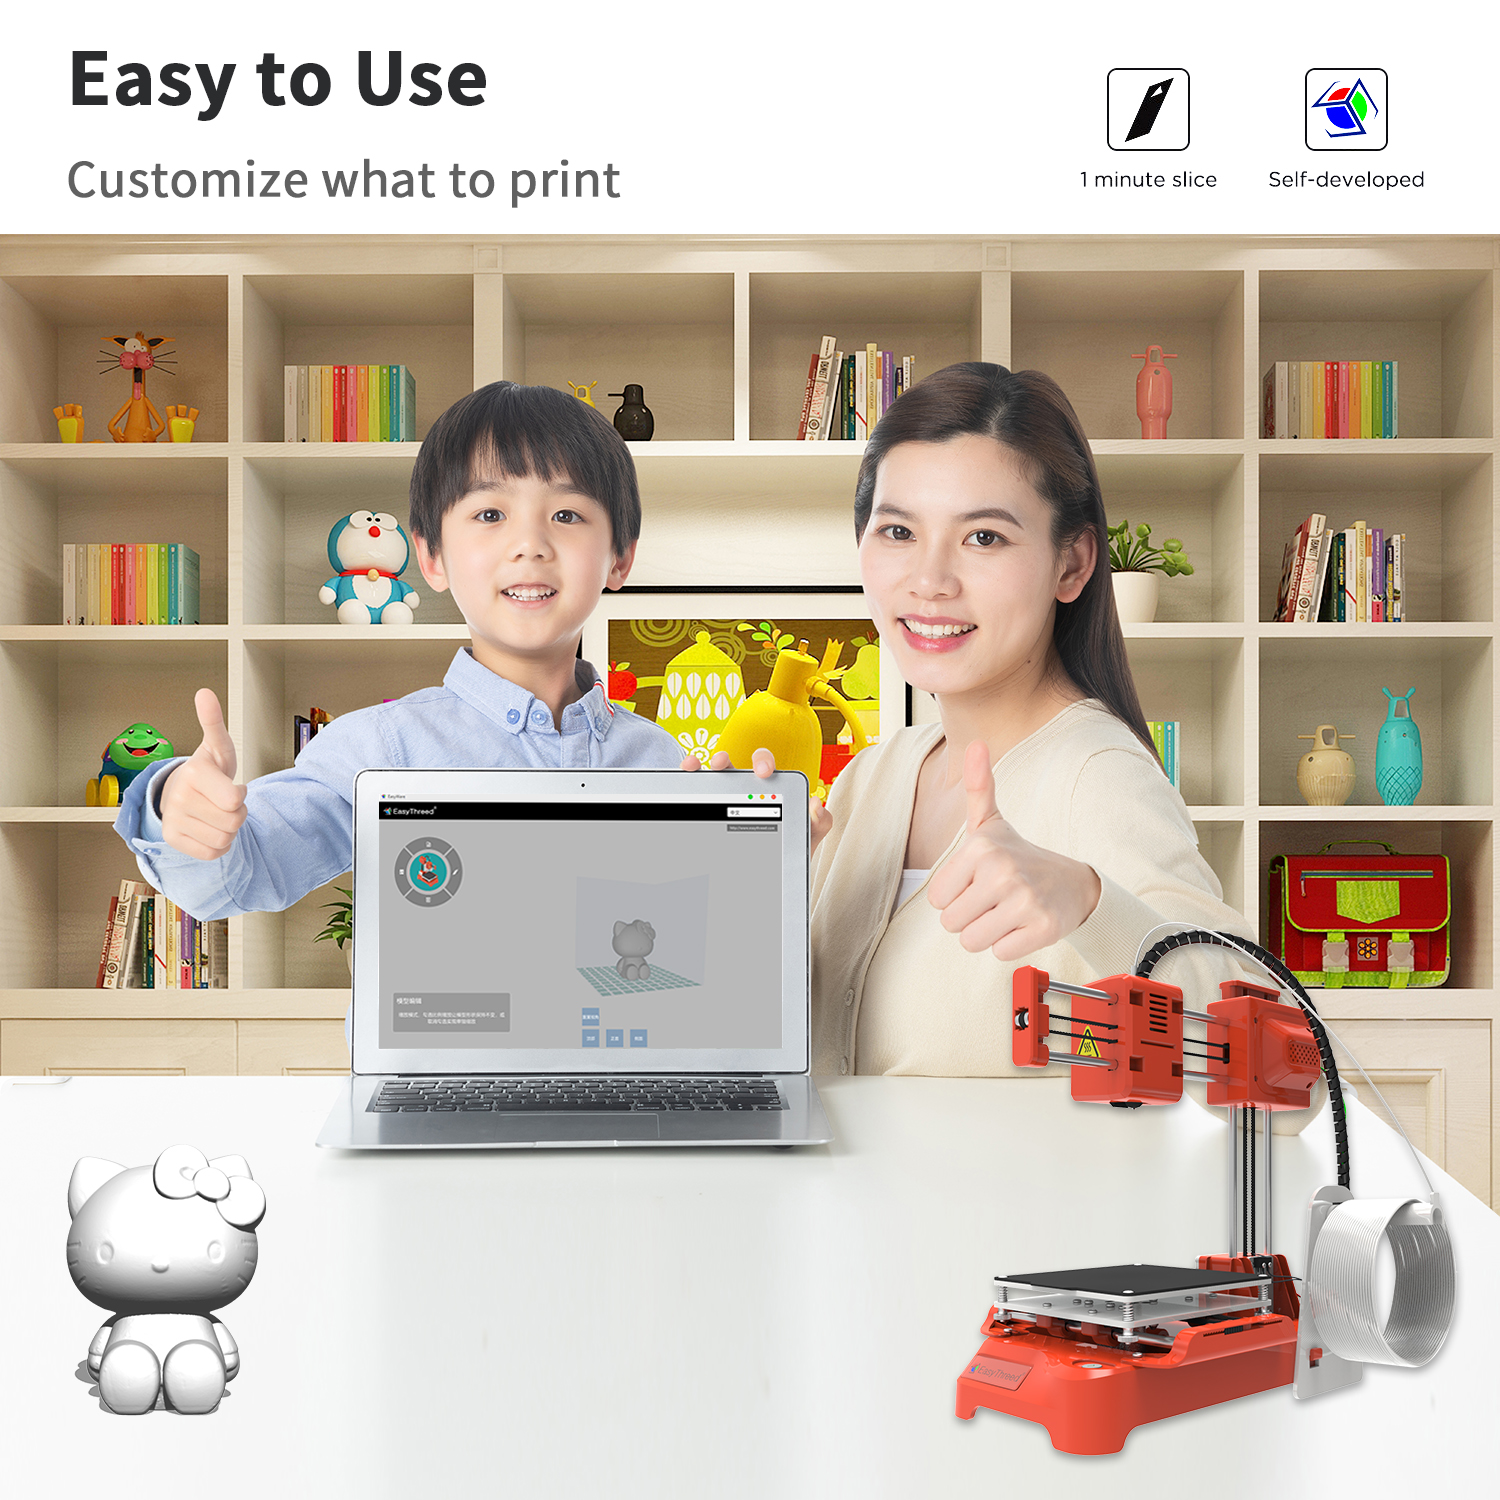 Easythreedreg-K7-Desktop-Mini-3D-Printer-100100100mm-Printing-Size-for-Children-Student-Household-Ed-1805354-10